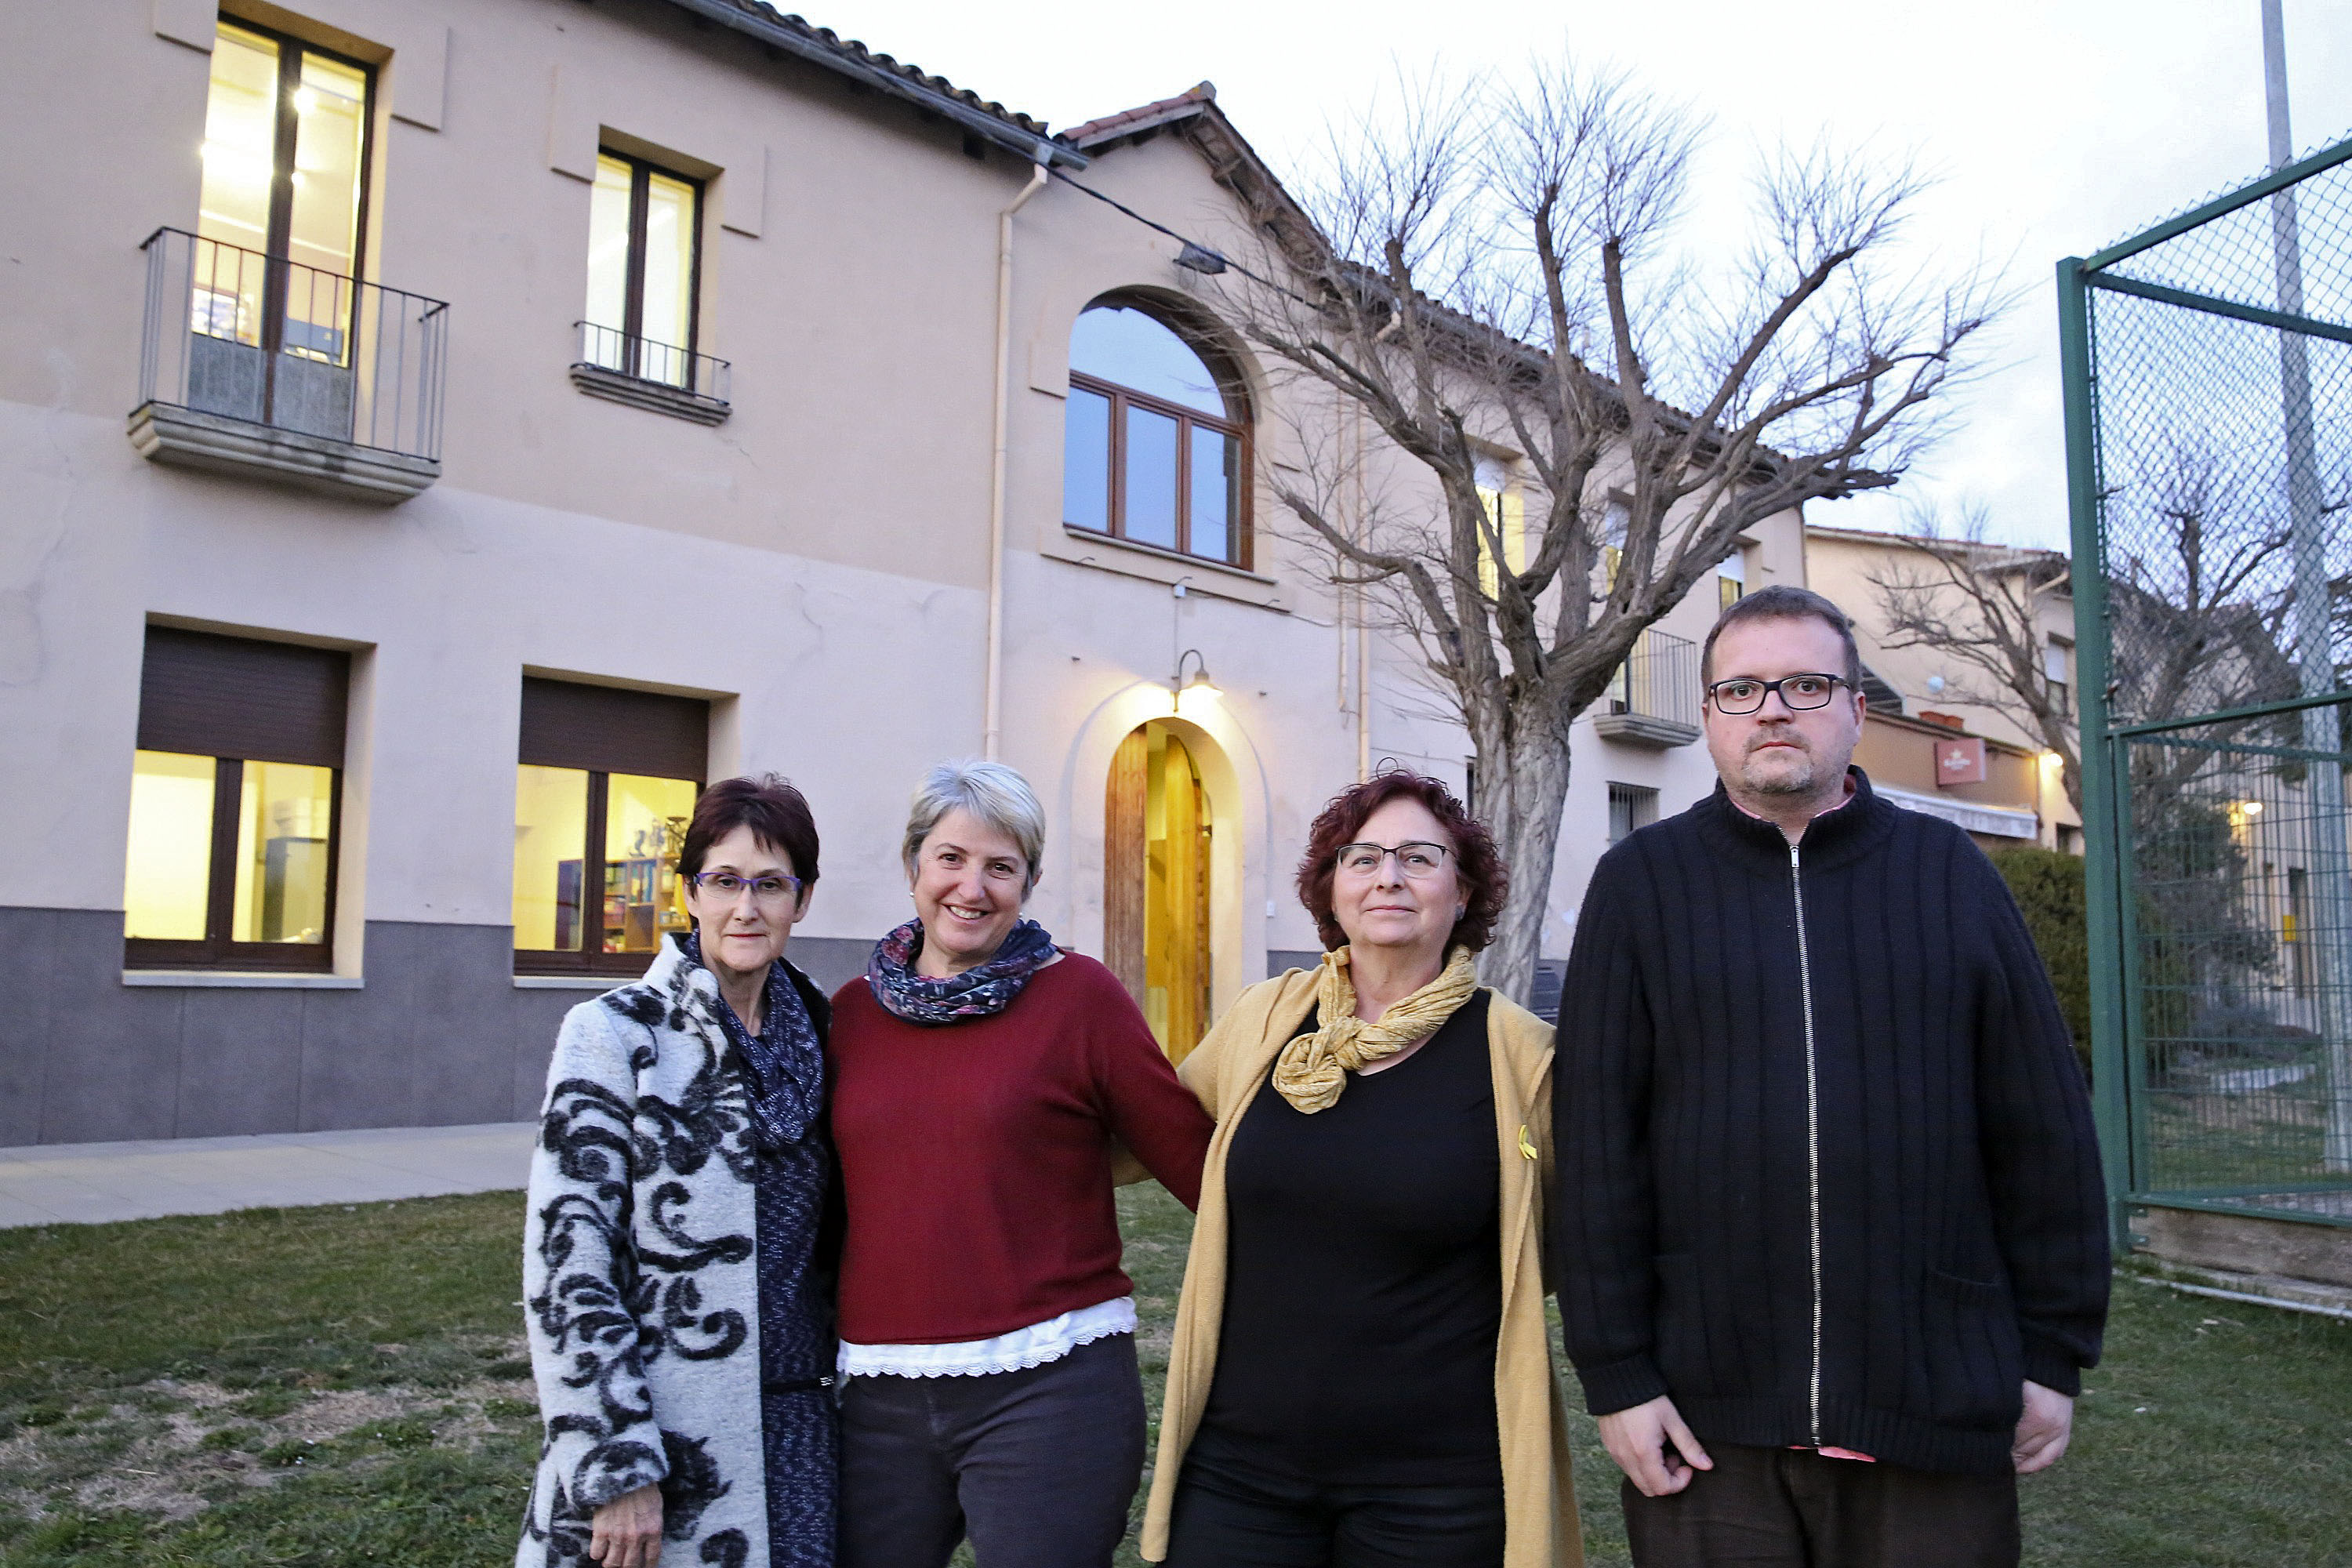 Montse Pietx, Isabel Capdevila, Ester Giannoni i Joaquim Riera, del grup Buscant Arrels, davant de l'edifici de l'antiga escola i actual Ajuntament